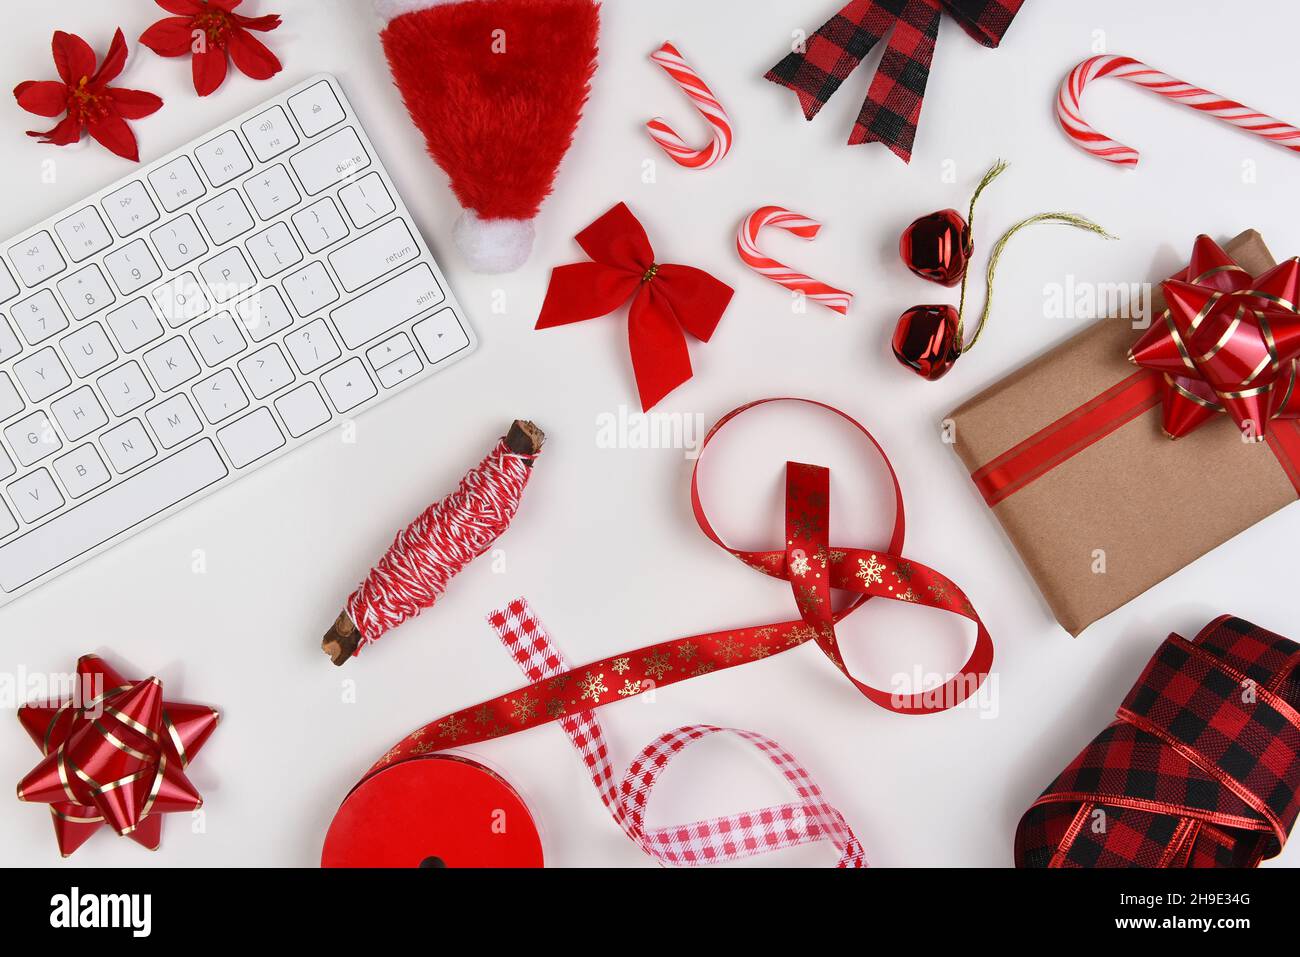 Plat de Noël.Rouge présenter les fournitures d'emballage, sur une table blanche, avec clavier d'ordinateur. Banque D'Images